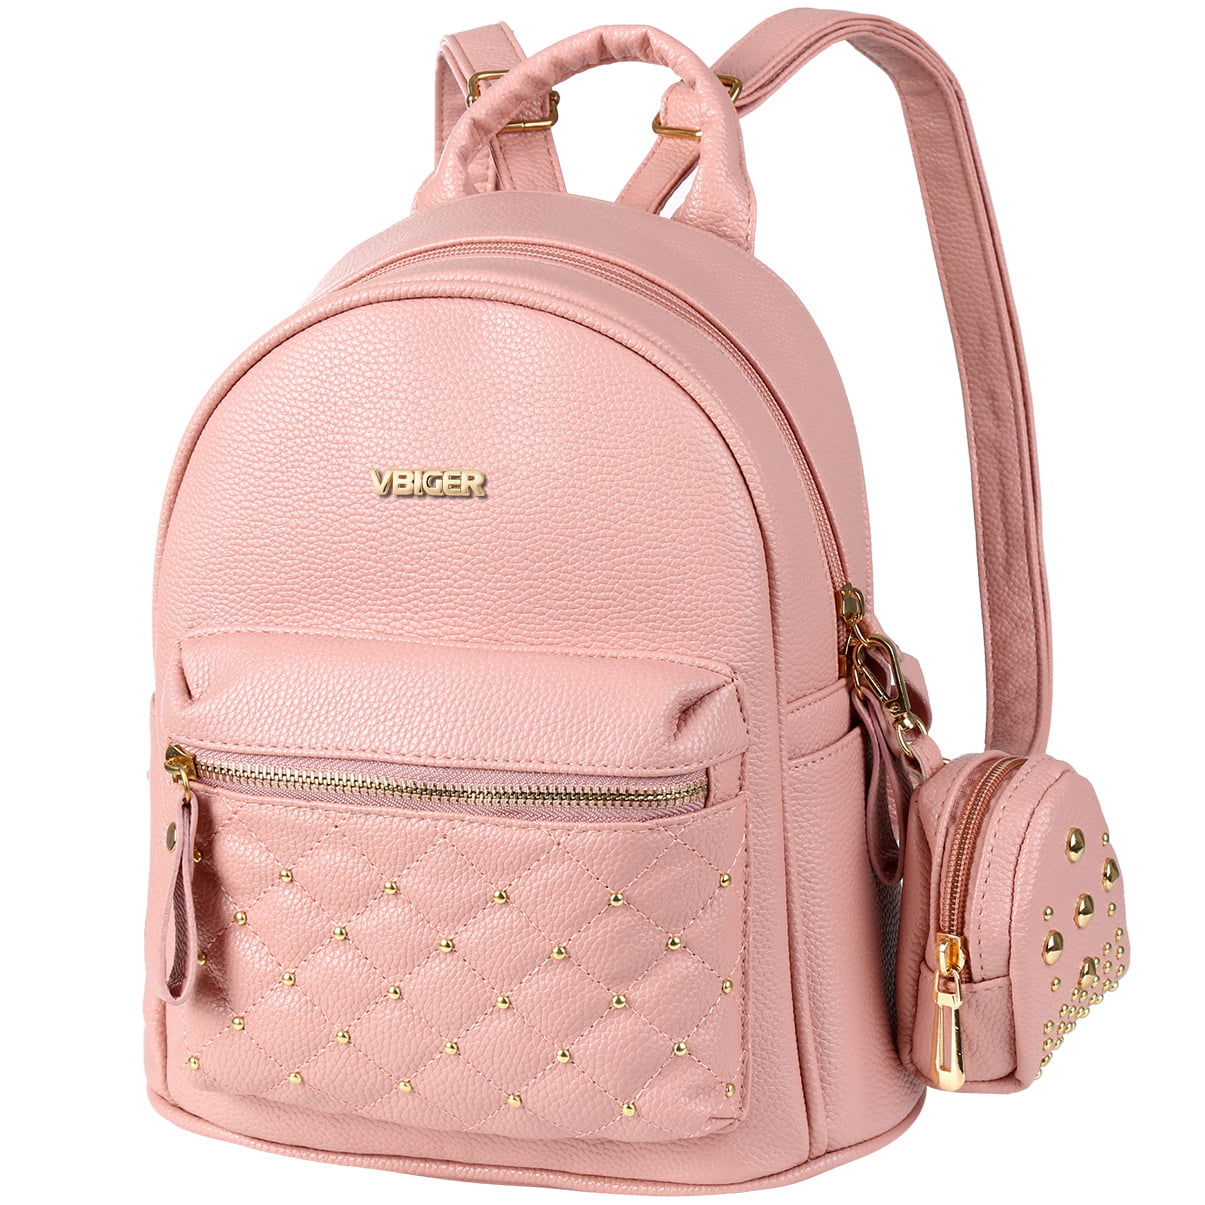 2PCS PU Leather Backpack Women Girl Travel College School Shoulder Bag Rucksack 